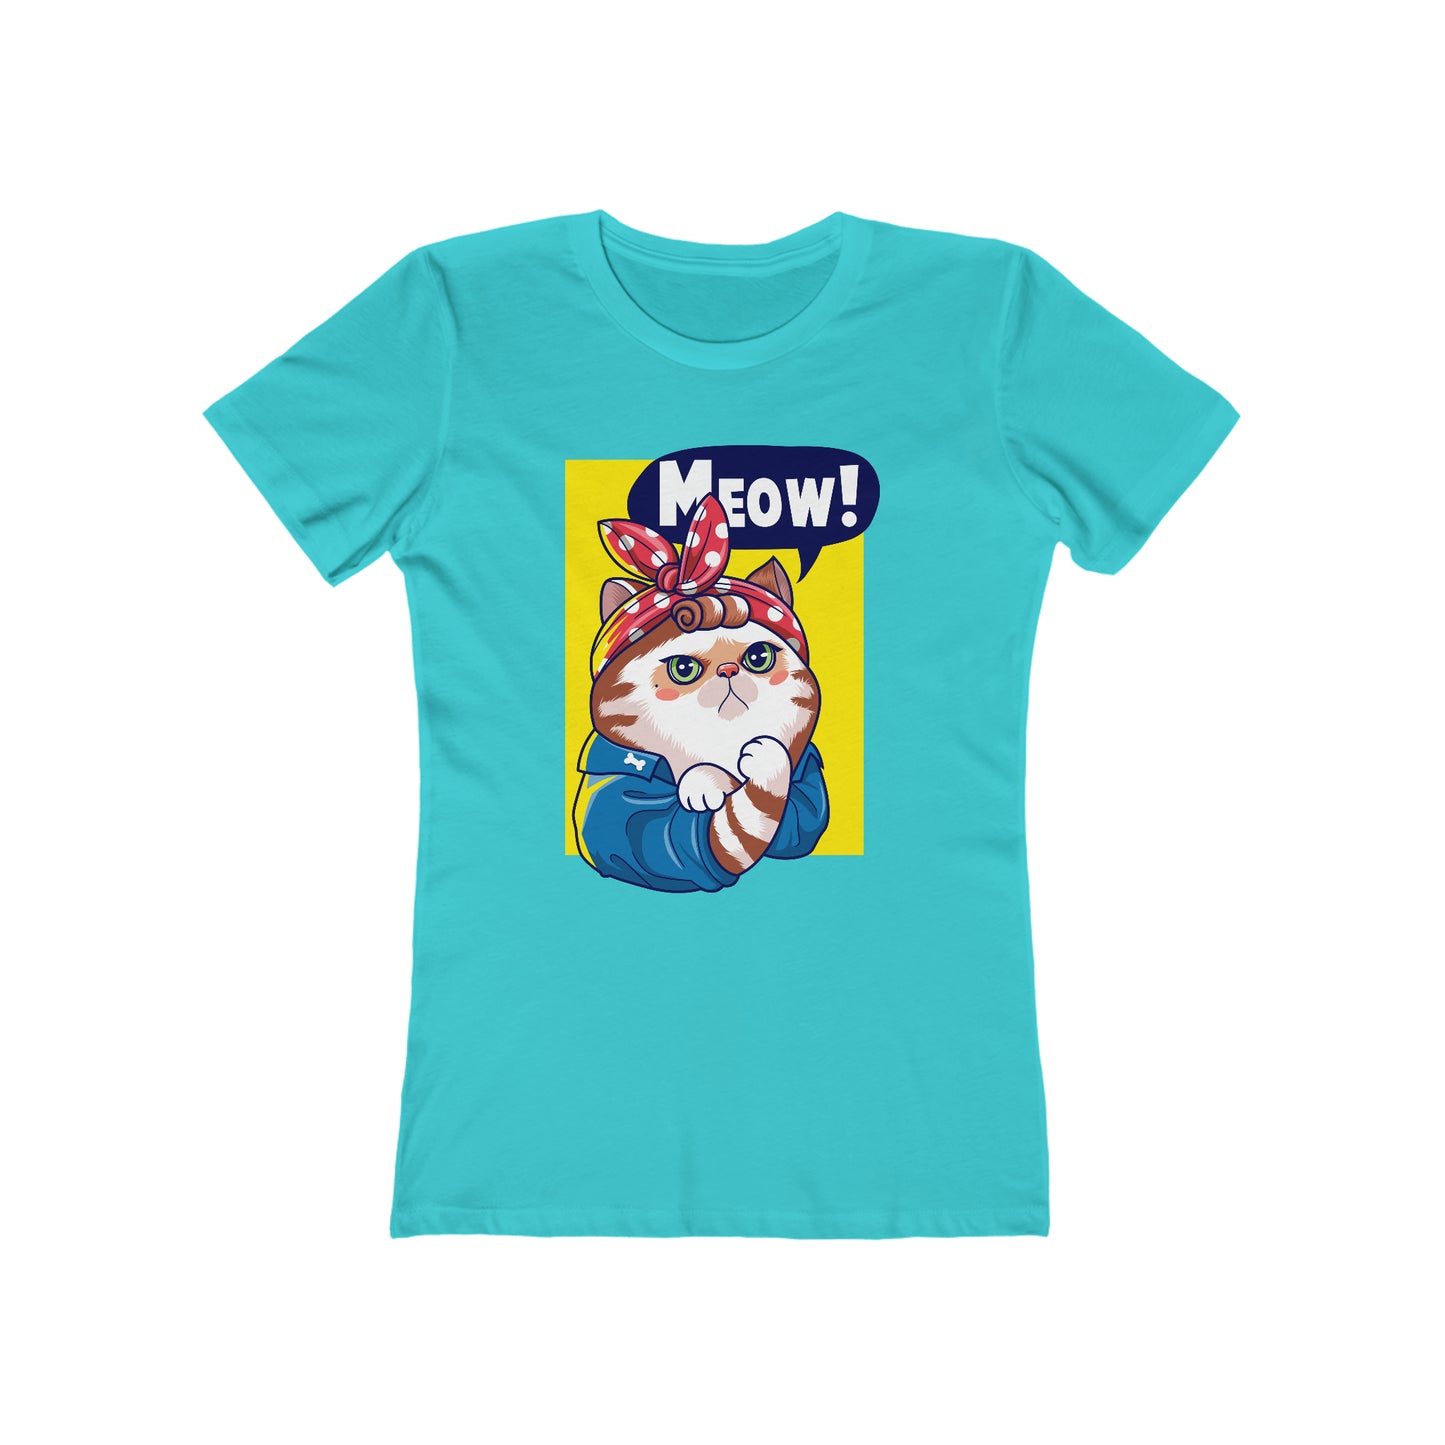 Meow! - Women's T-shirt